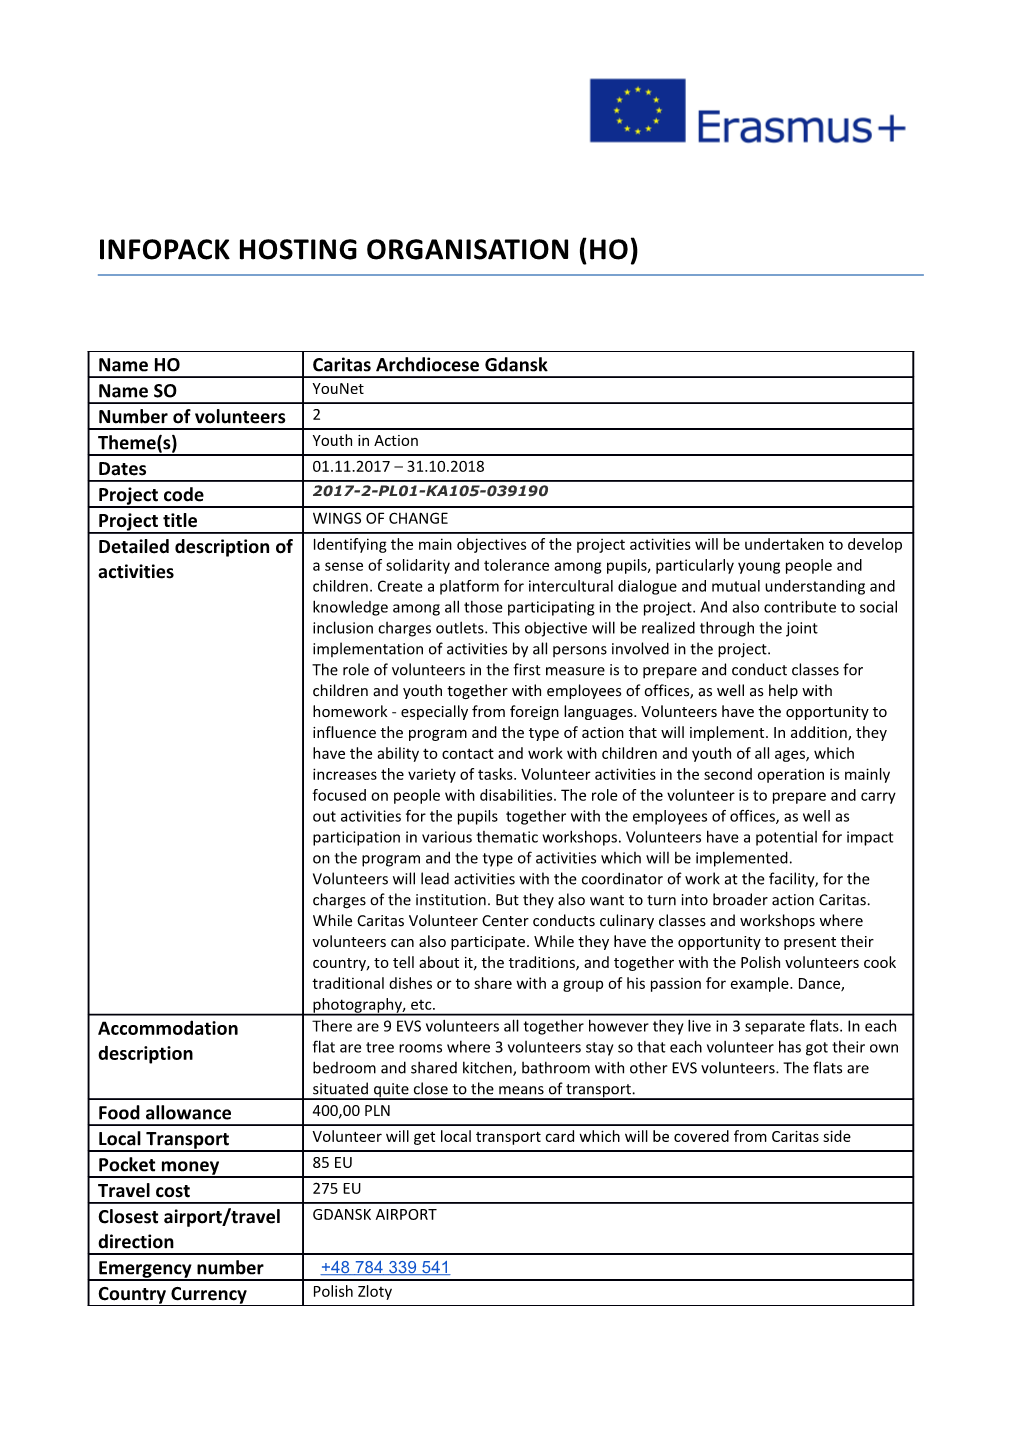 Infopack Hosting Organisation (Ho)